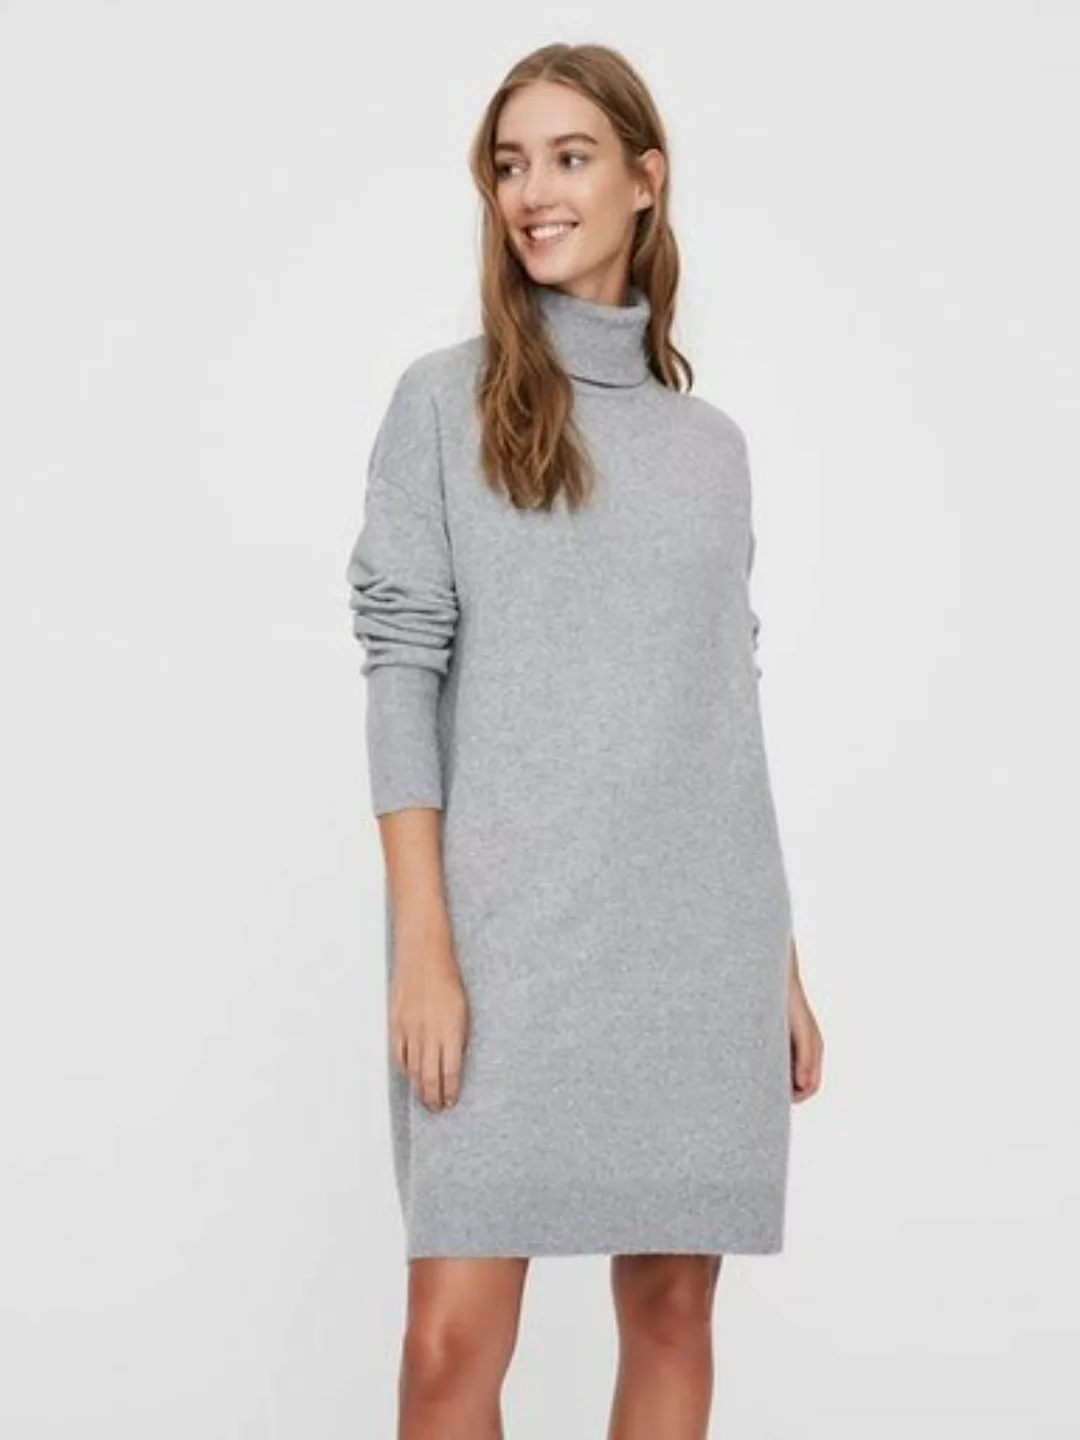 Vero Moda – Pulloverkleid mit Rollkragen in Schwarz meliert günstig online kaufen